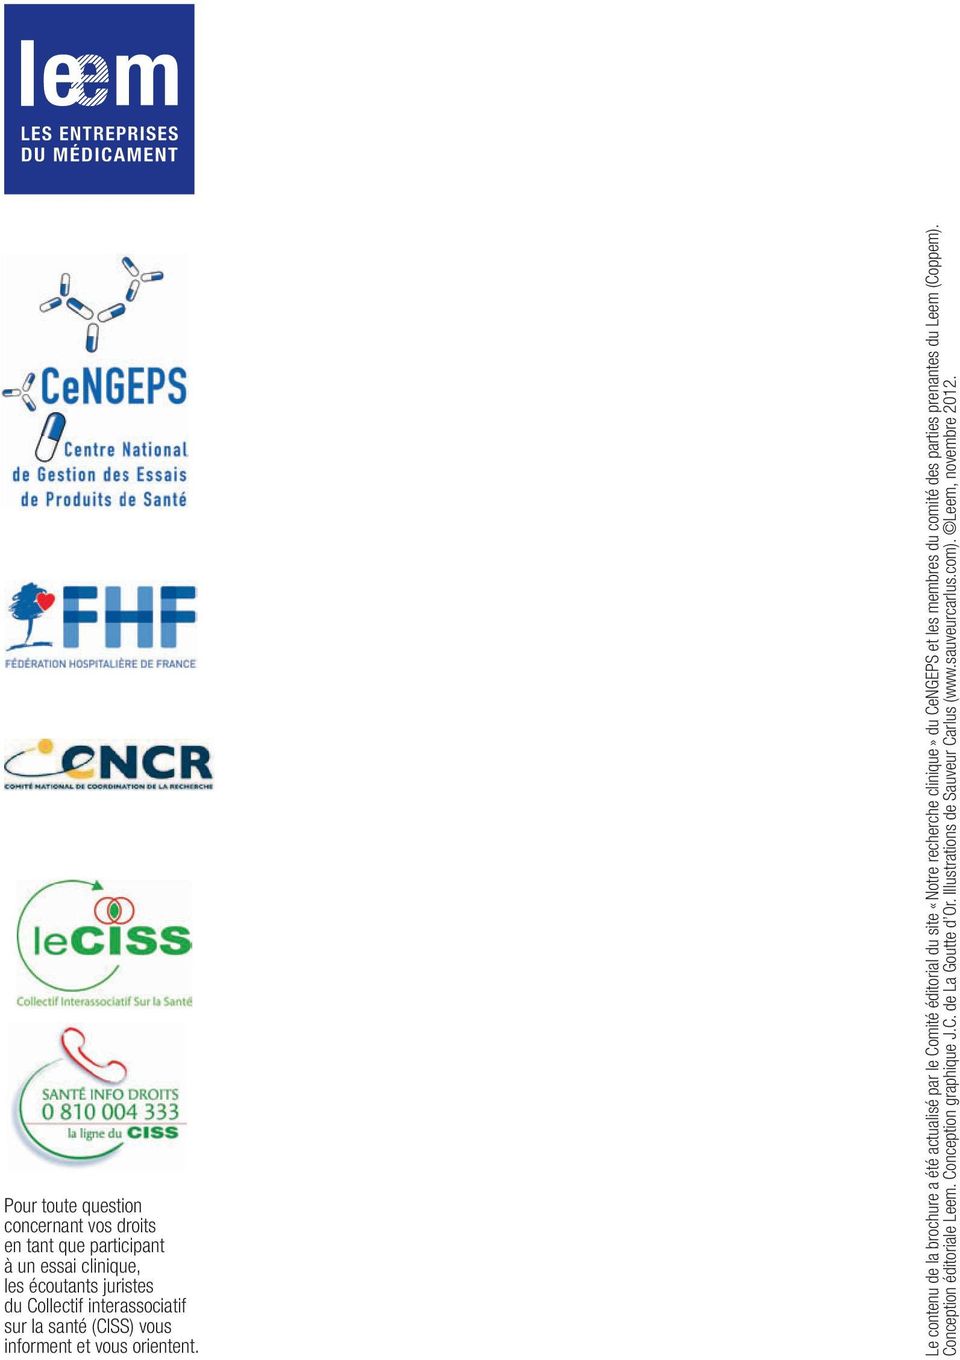 Le contenu de la brochure a été actualisé par le Comité éditorial du site «Notre recherche clinique» du CeNGEPS et les membres du